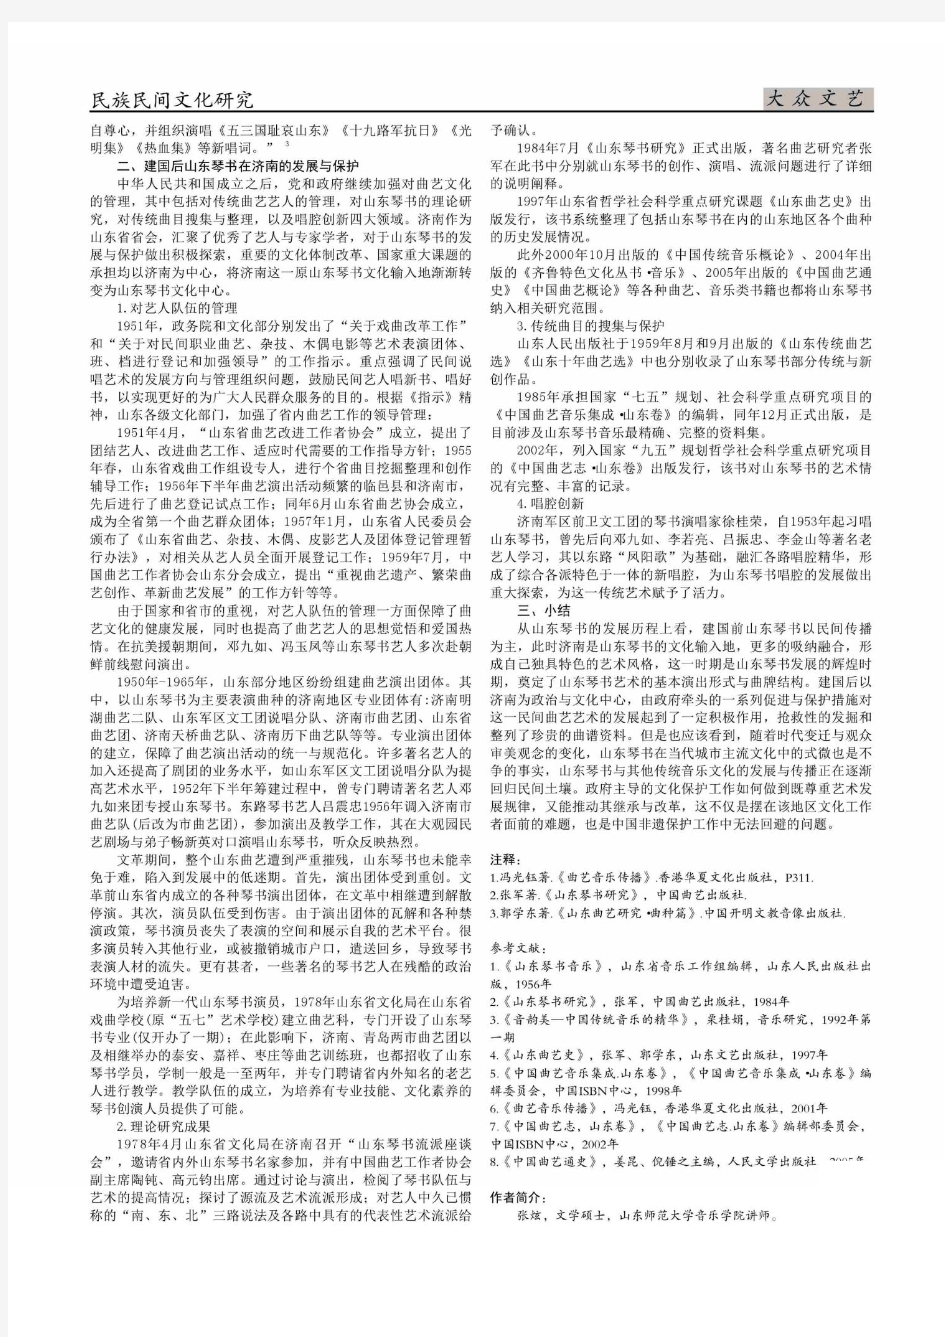 山东琴书在济南的保护与发展综述